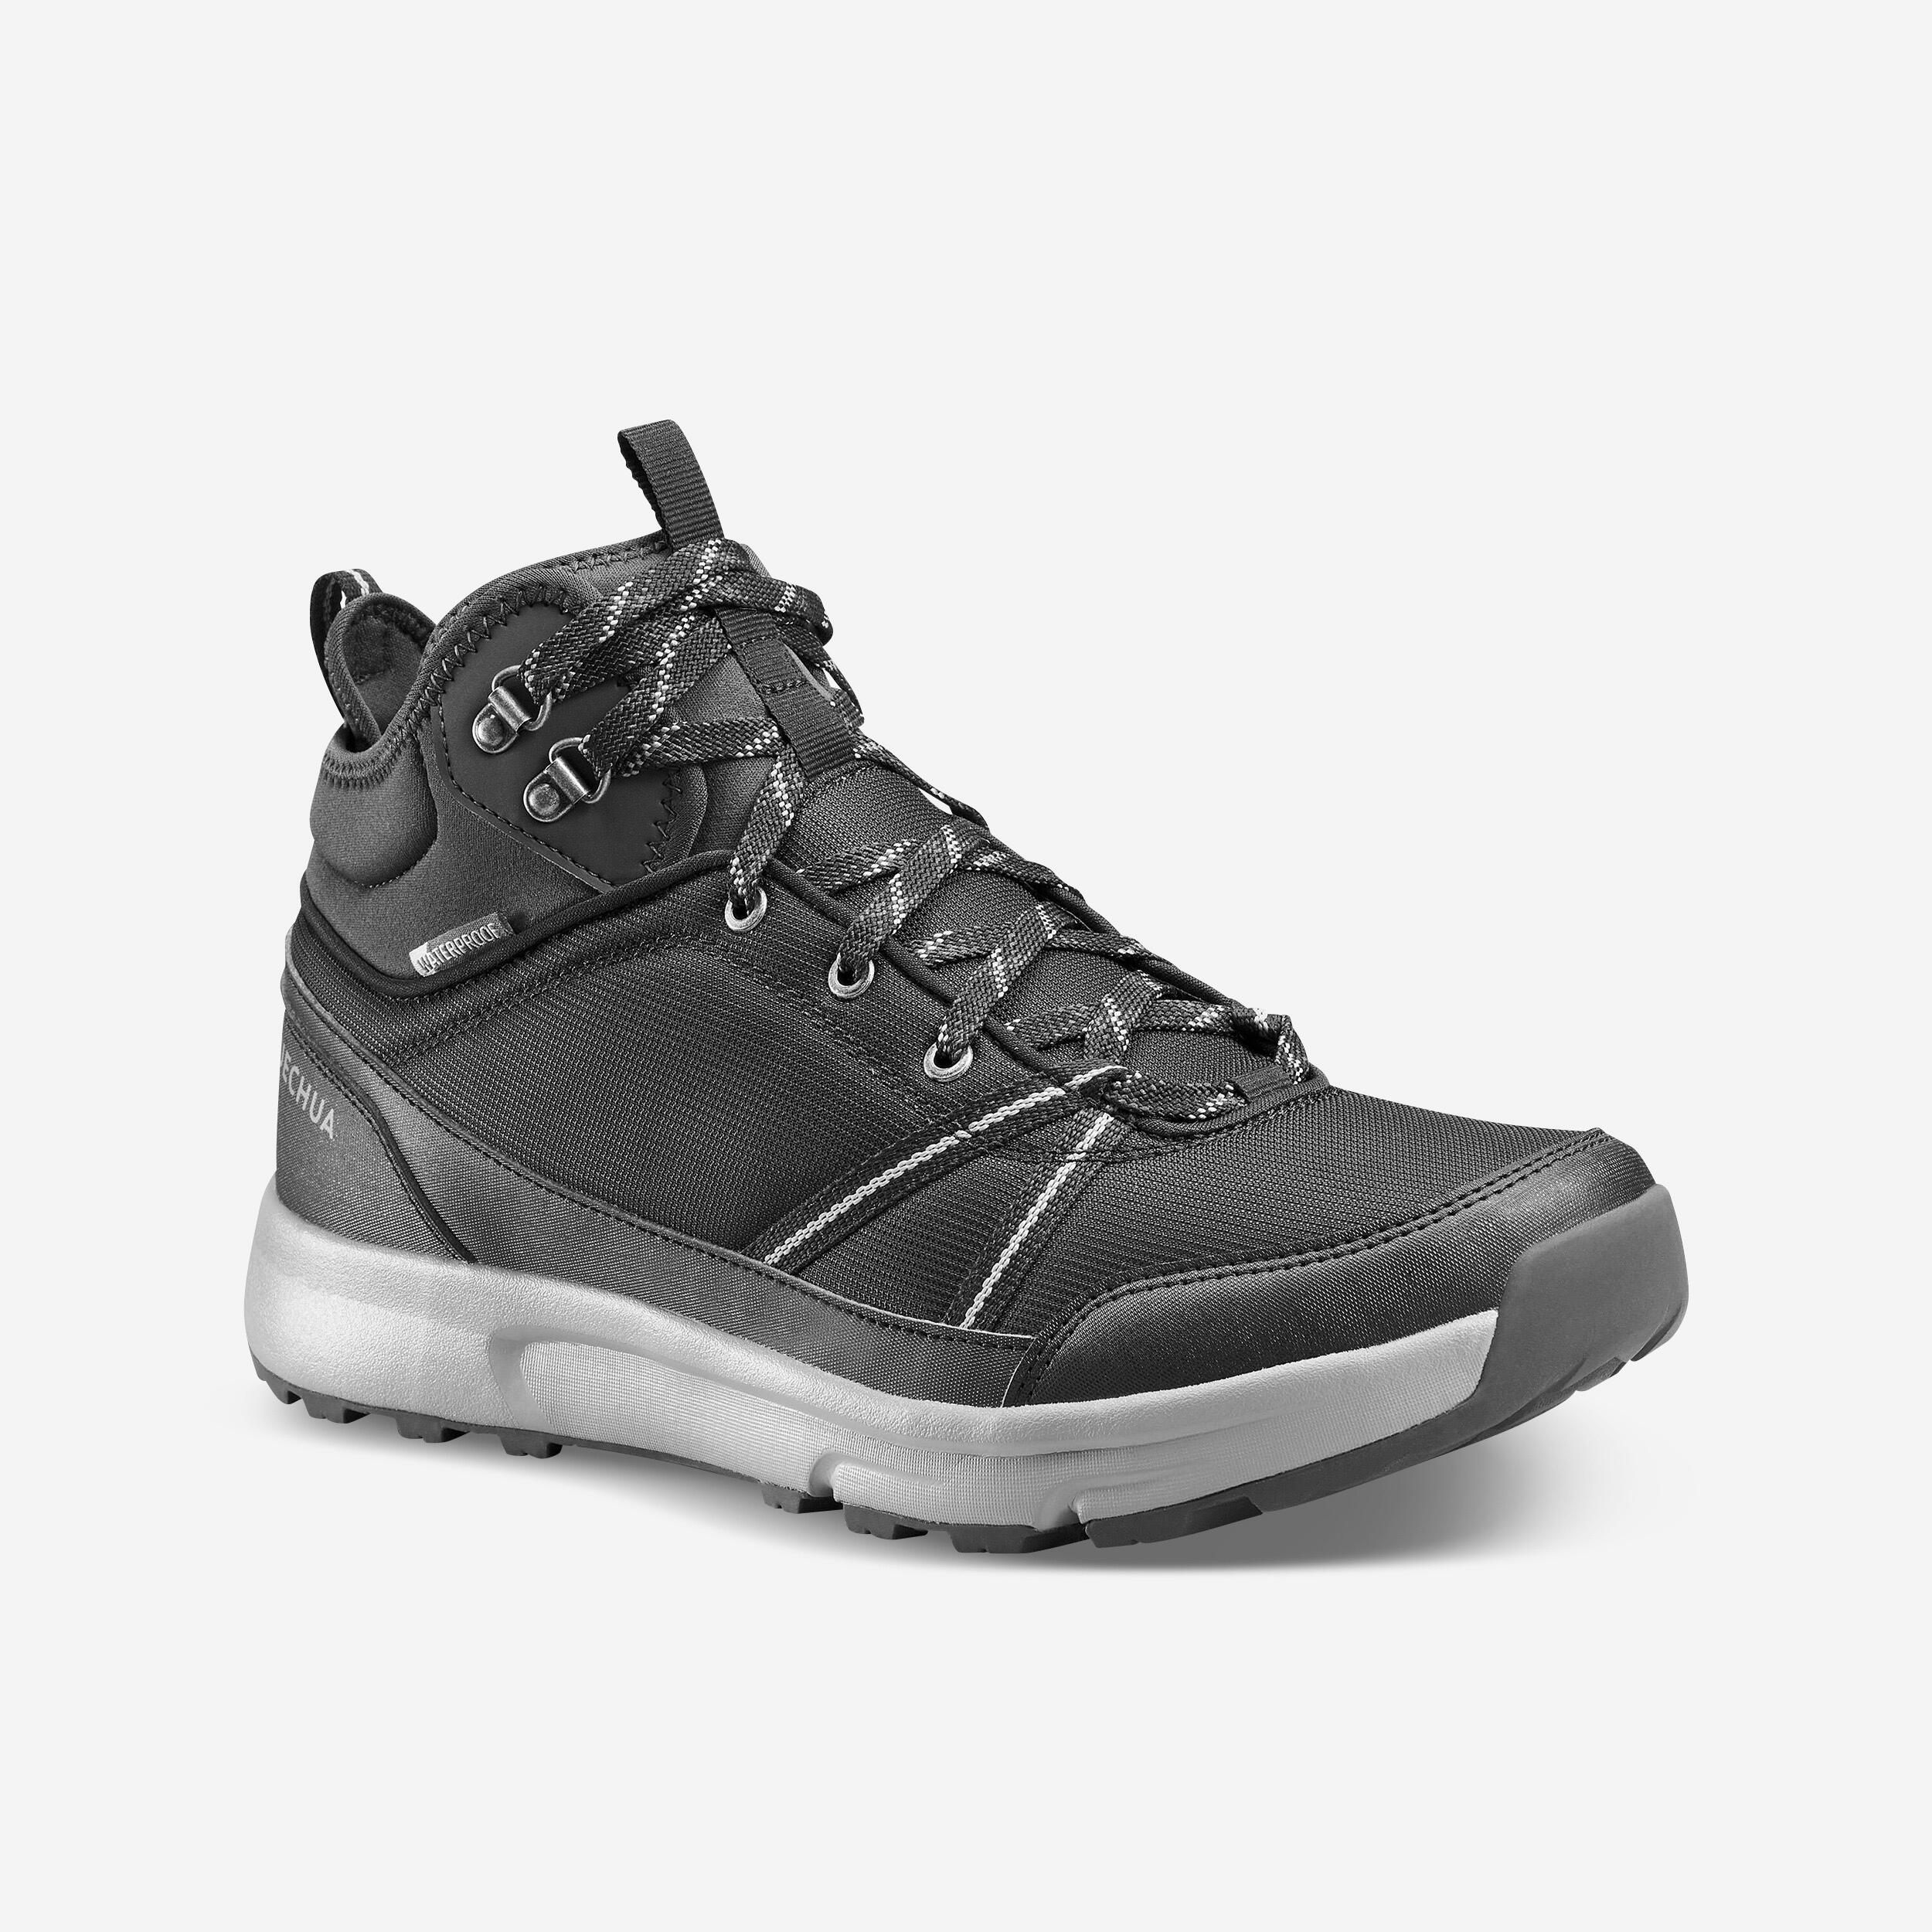 Men’s Hiking Shoes - MT 100